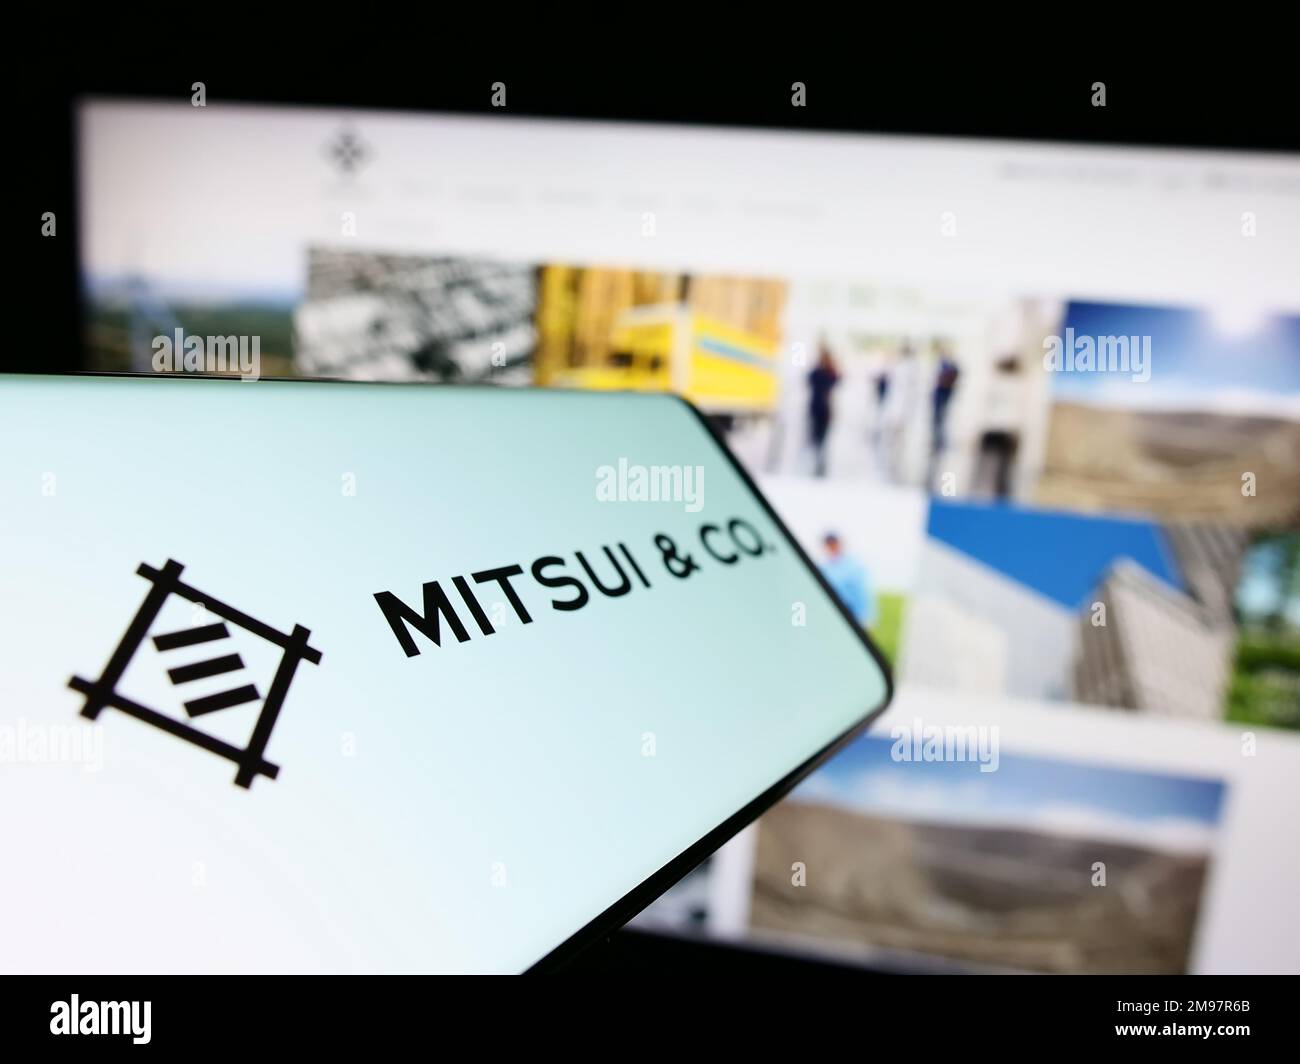 Teléfono móvil con logotipo del conglomerado japonés Mitsui Co. Ltd. En la pantalla frente al sitio web de la empresa. Enfoque en el centro izquierdo de la pantalla del teléfono. Foto de stock